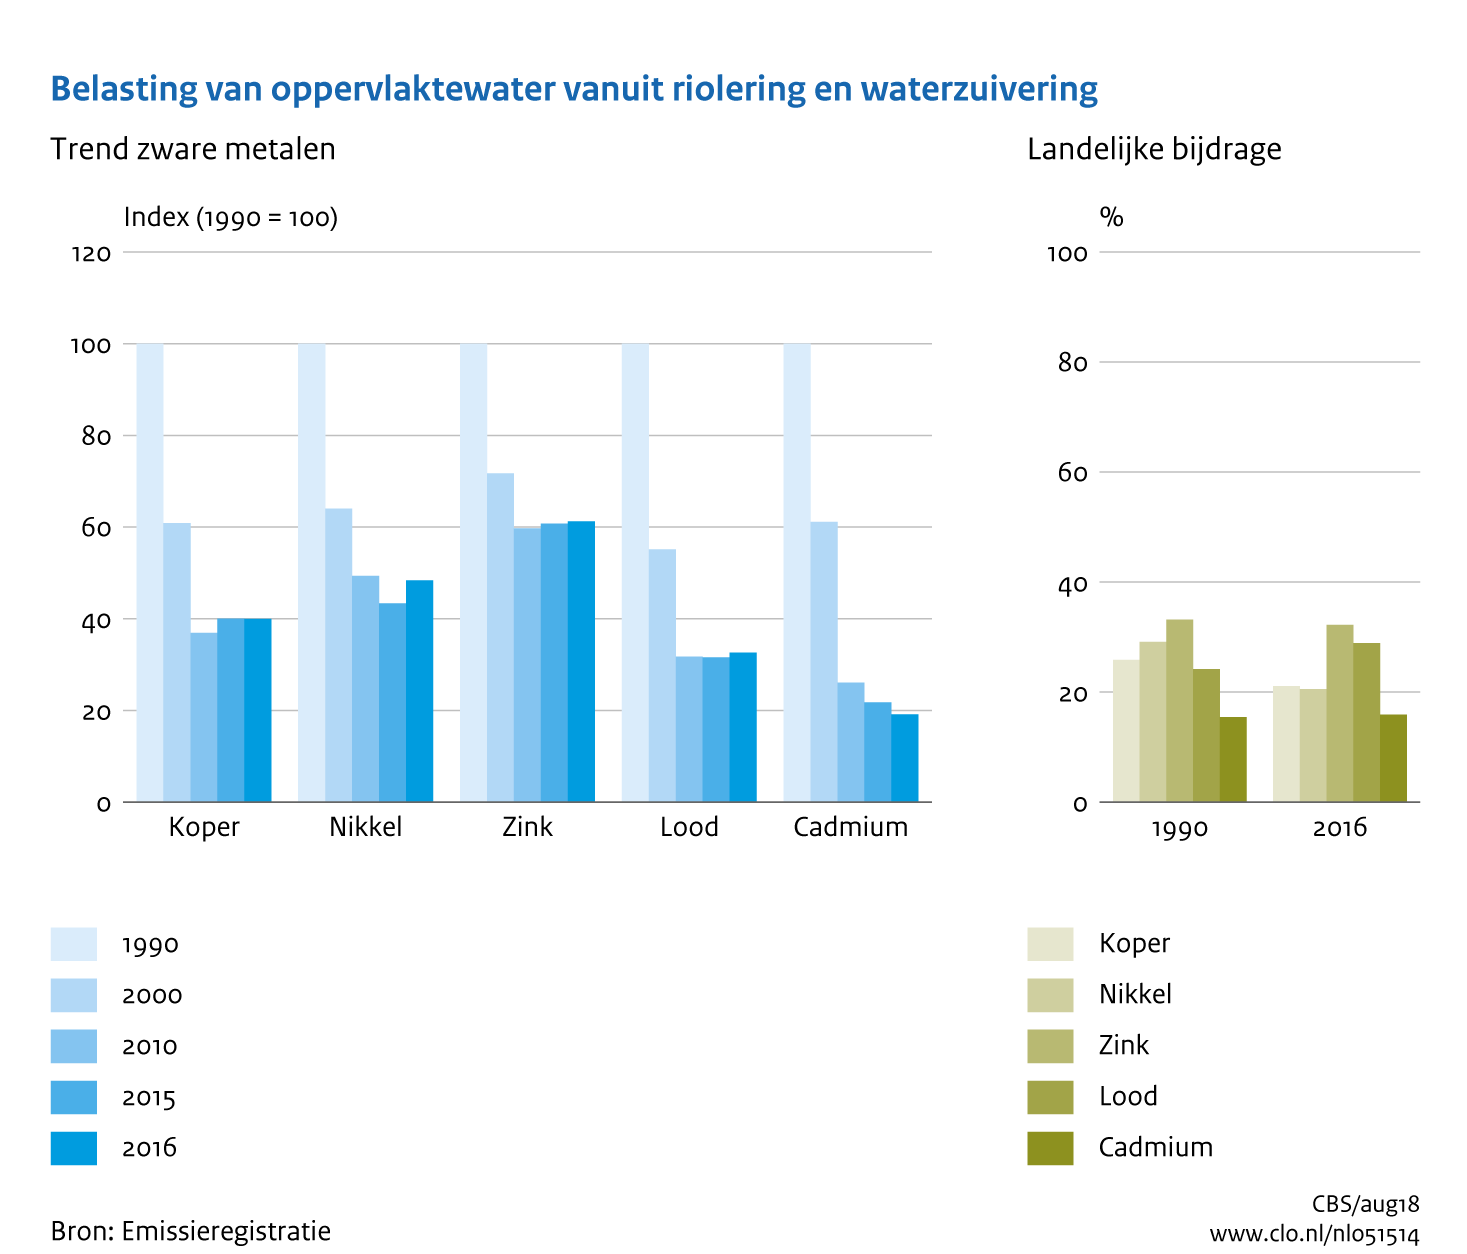 Figuur Belasting oppervlaktewater vanuit riolering en rioolwaterzuivering met zware metalen. In de rest van de tekst wordt deze figuur uitgebreider uitgelegd.